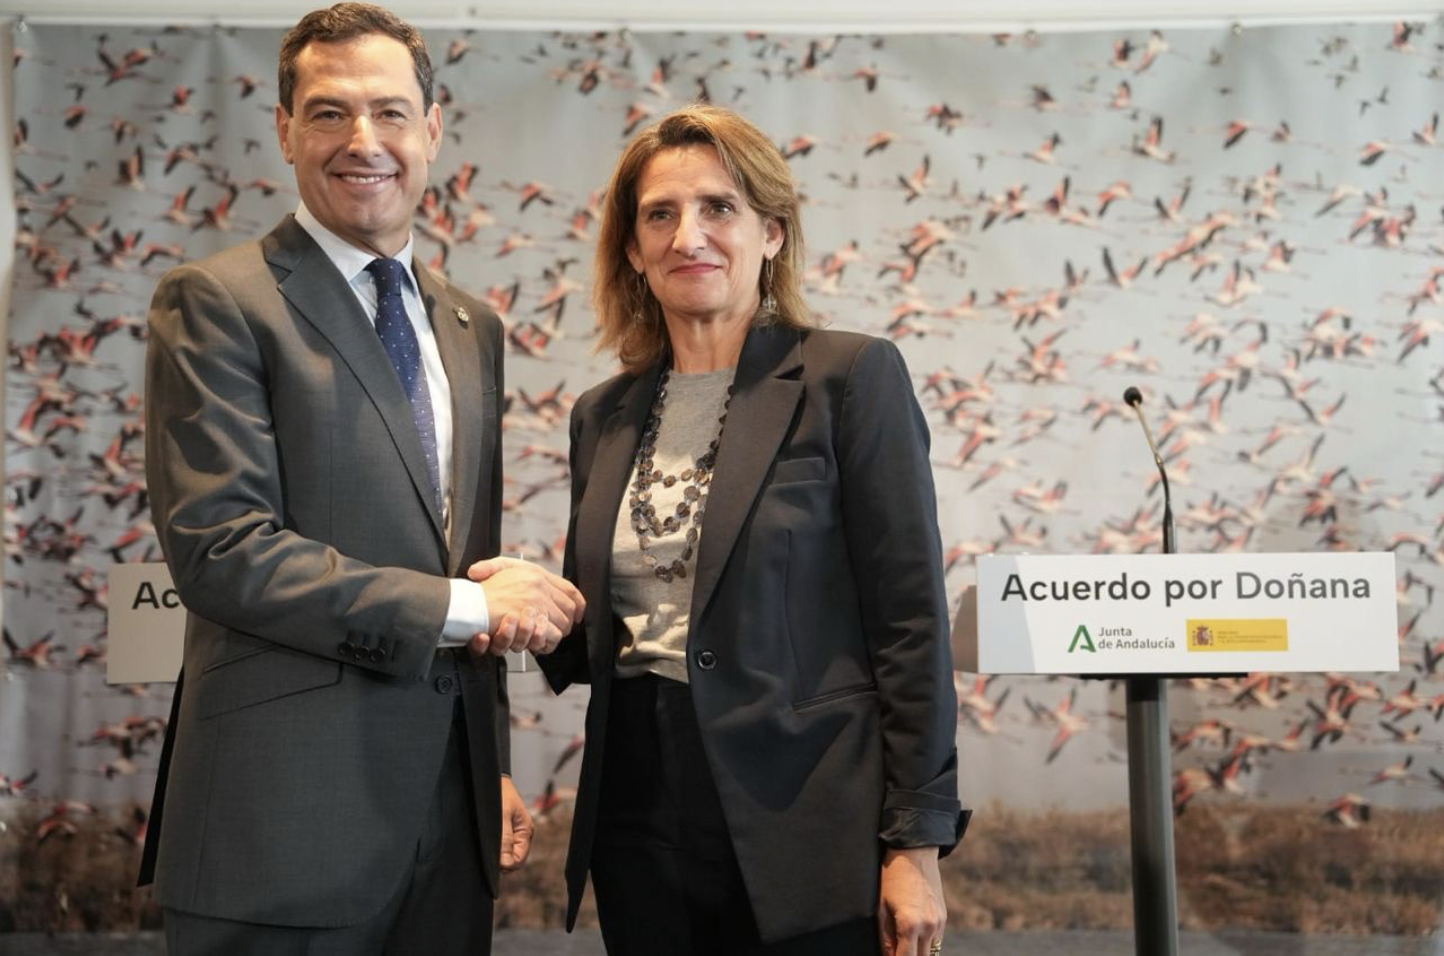 Doñana: 'regadío' sí, pero de dinero. En la imagen, Moreno Bonilla y la ministra Ribera se dan la mano tras firmar el acuerdo.